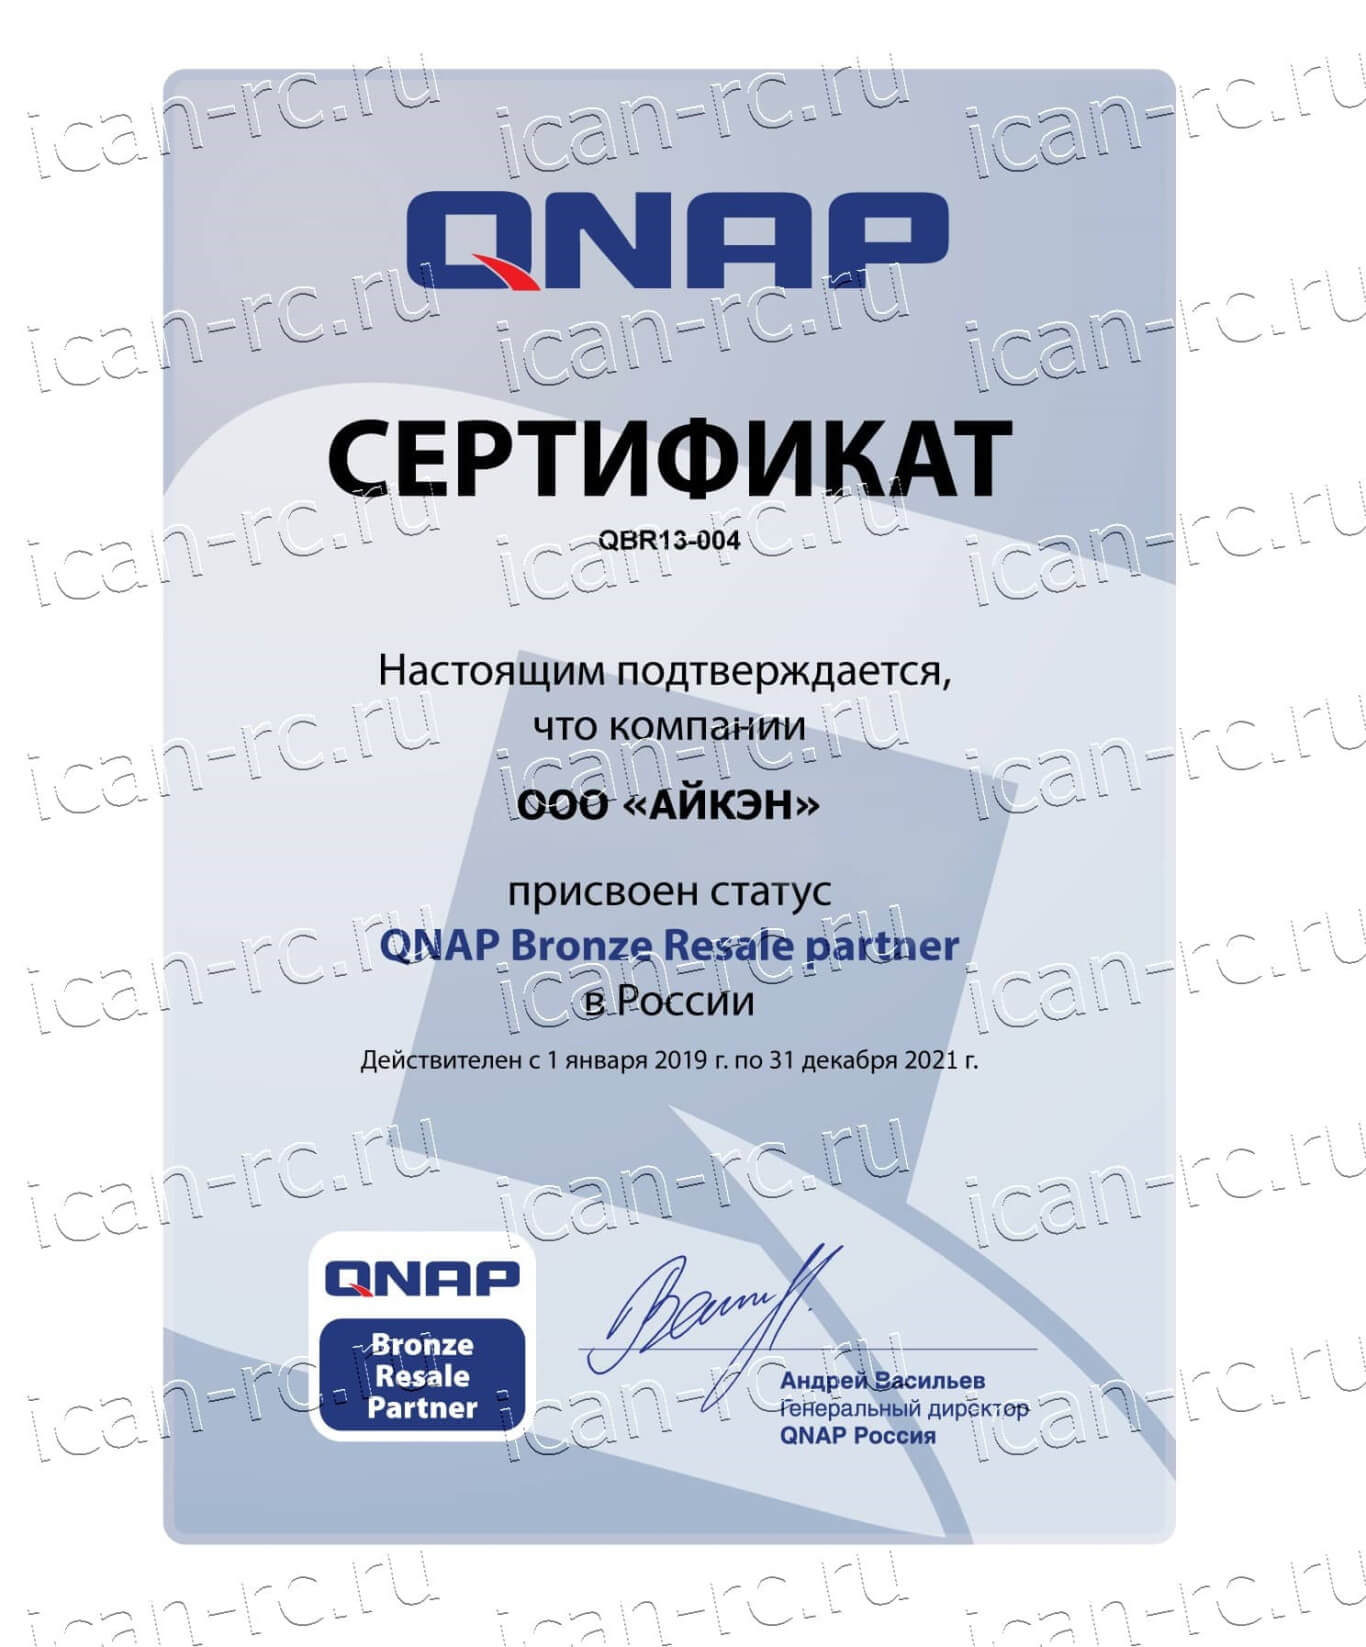 Официальный партнер QNAP